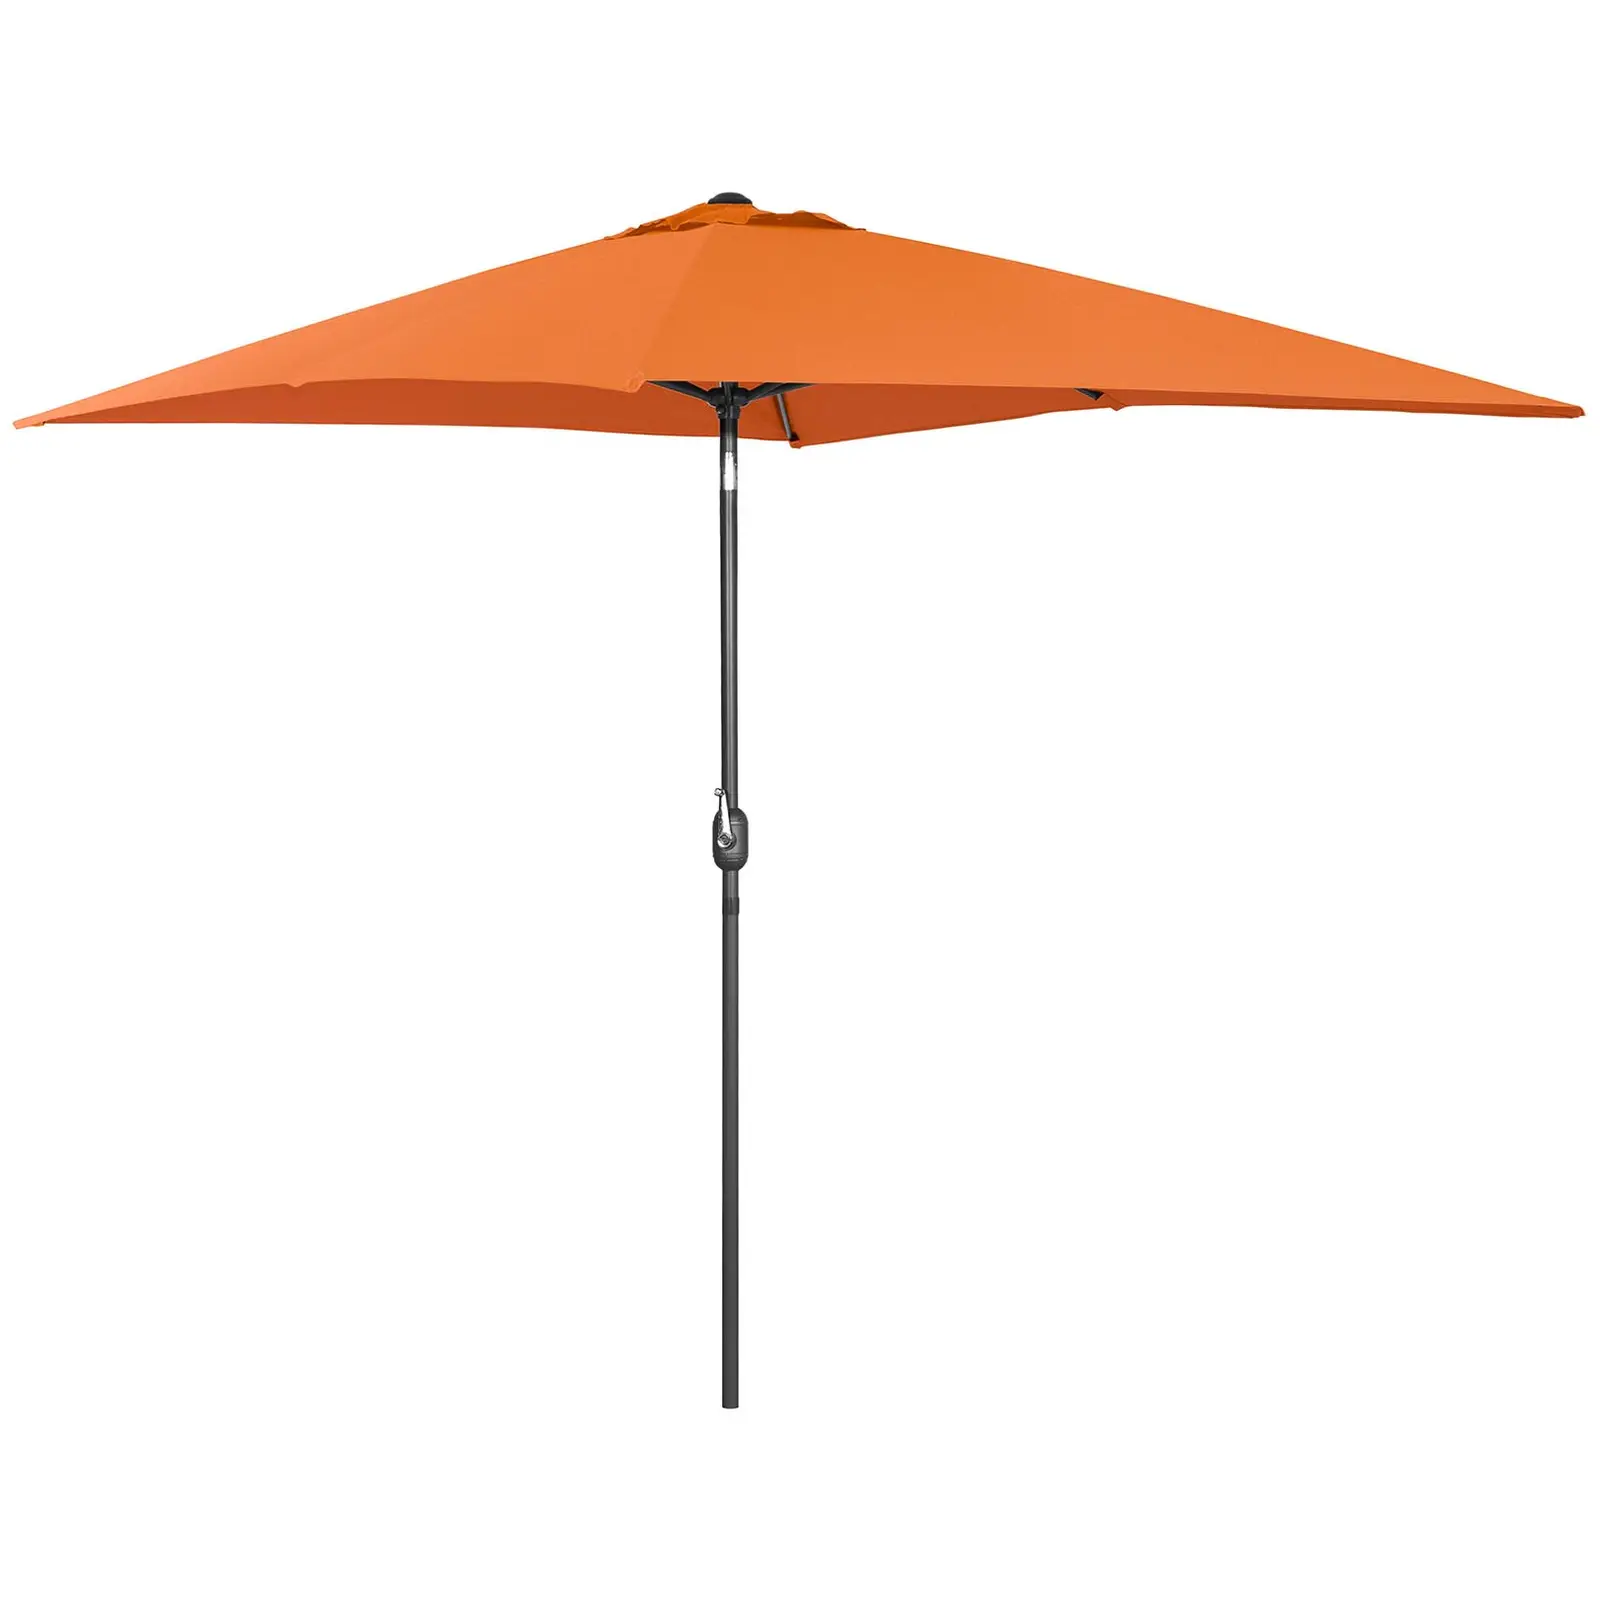 B-zboží Velký slunečník - oranžový - obdélníkový - 200 x 300 cm - naklápěcí